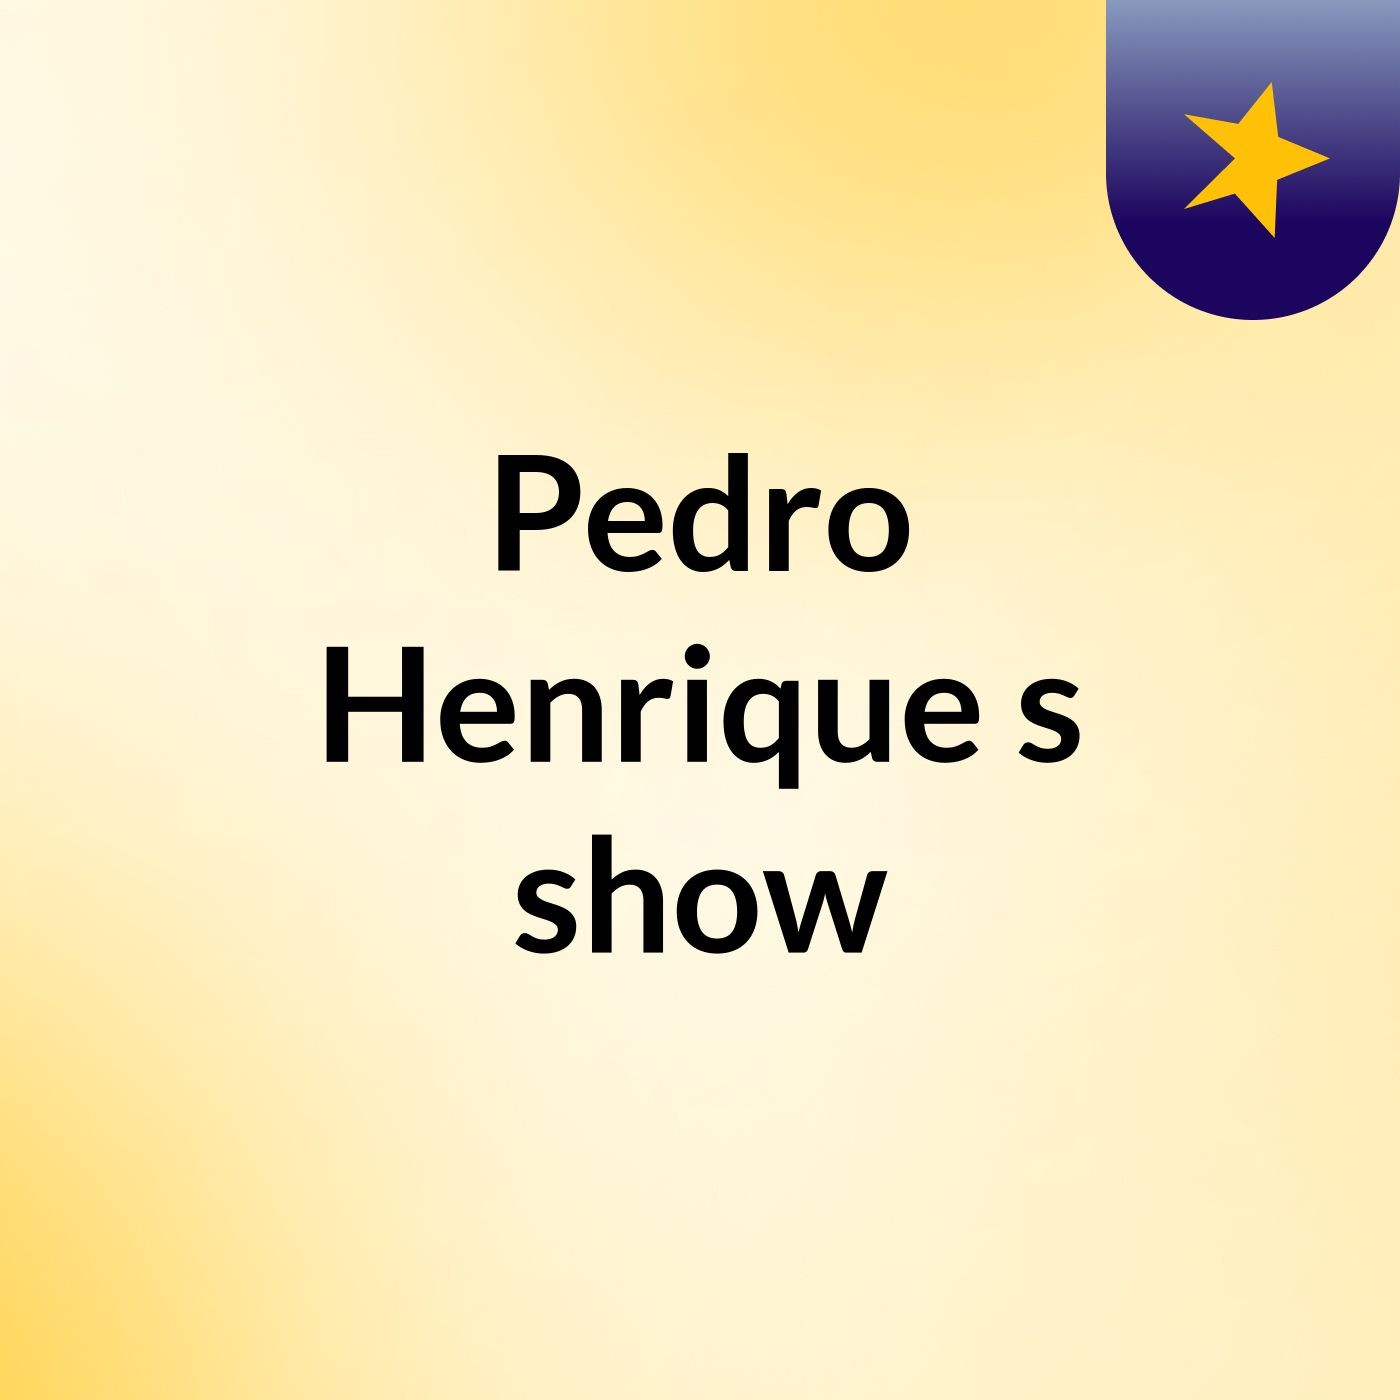 Pedro Henrique's show